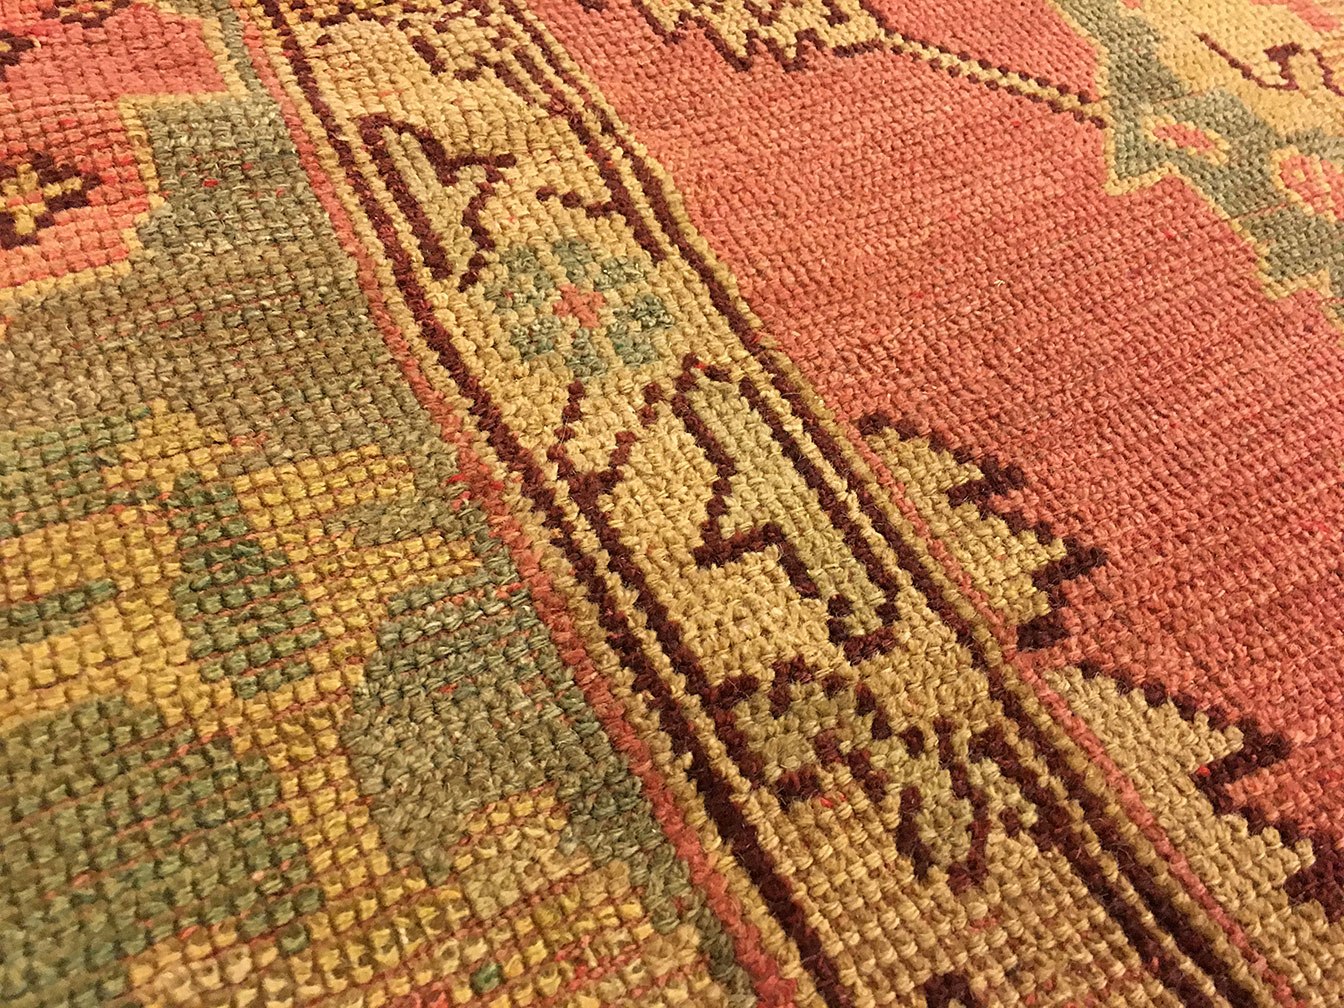 Antique oushak Carpet - # 51441